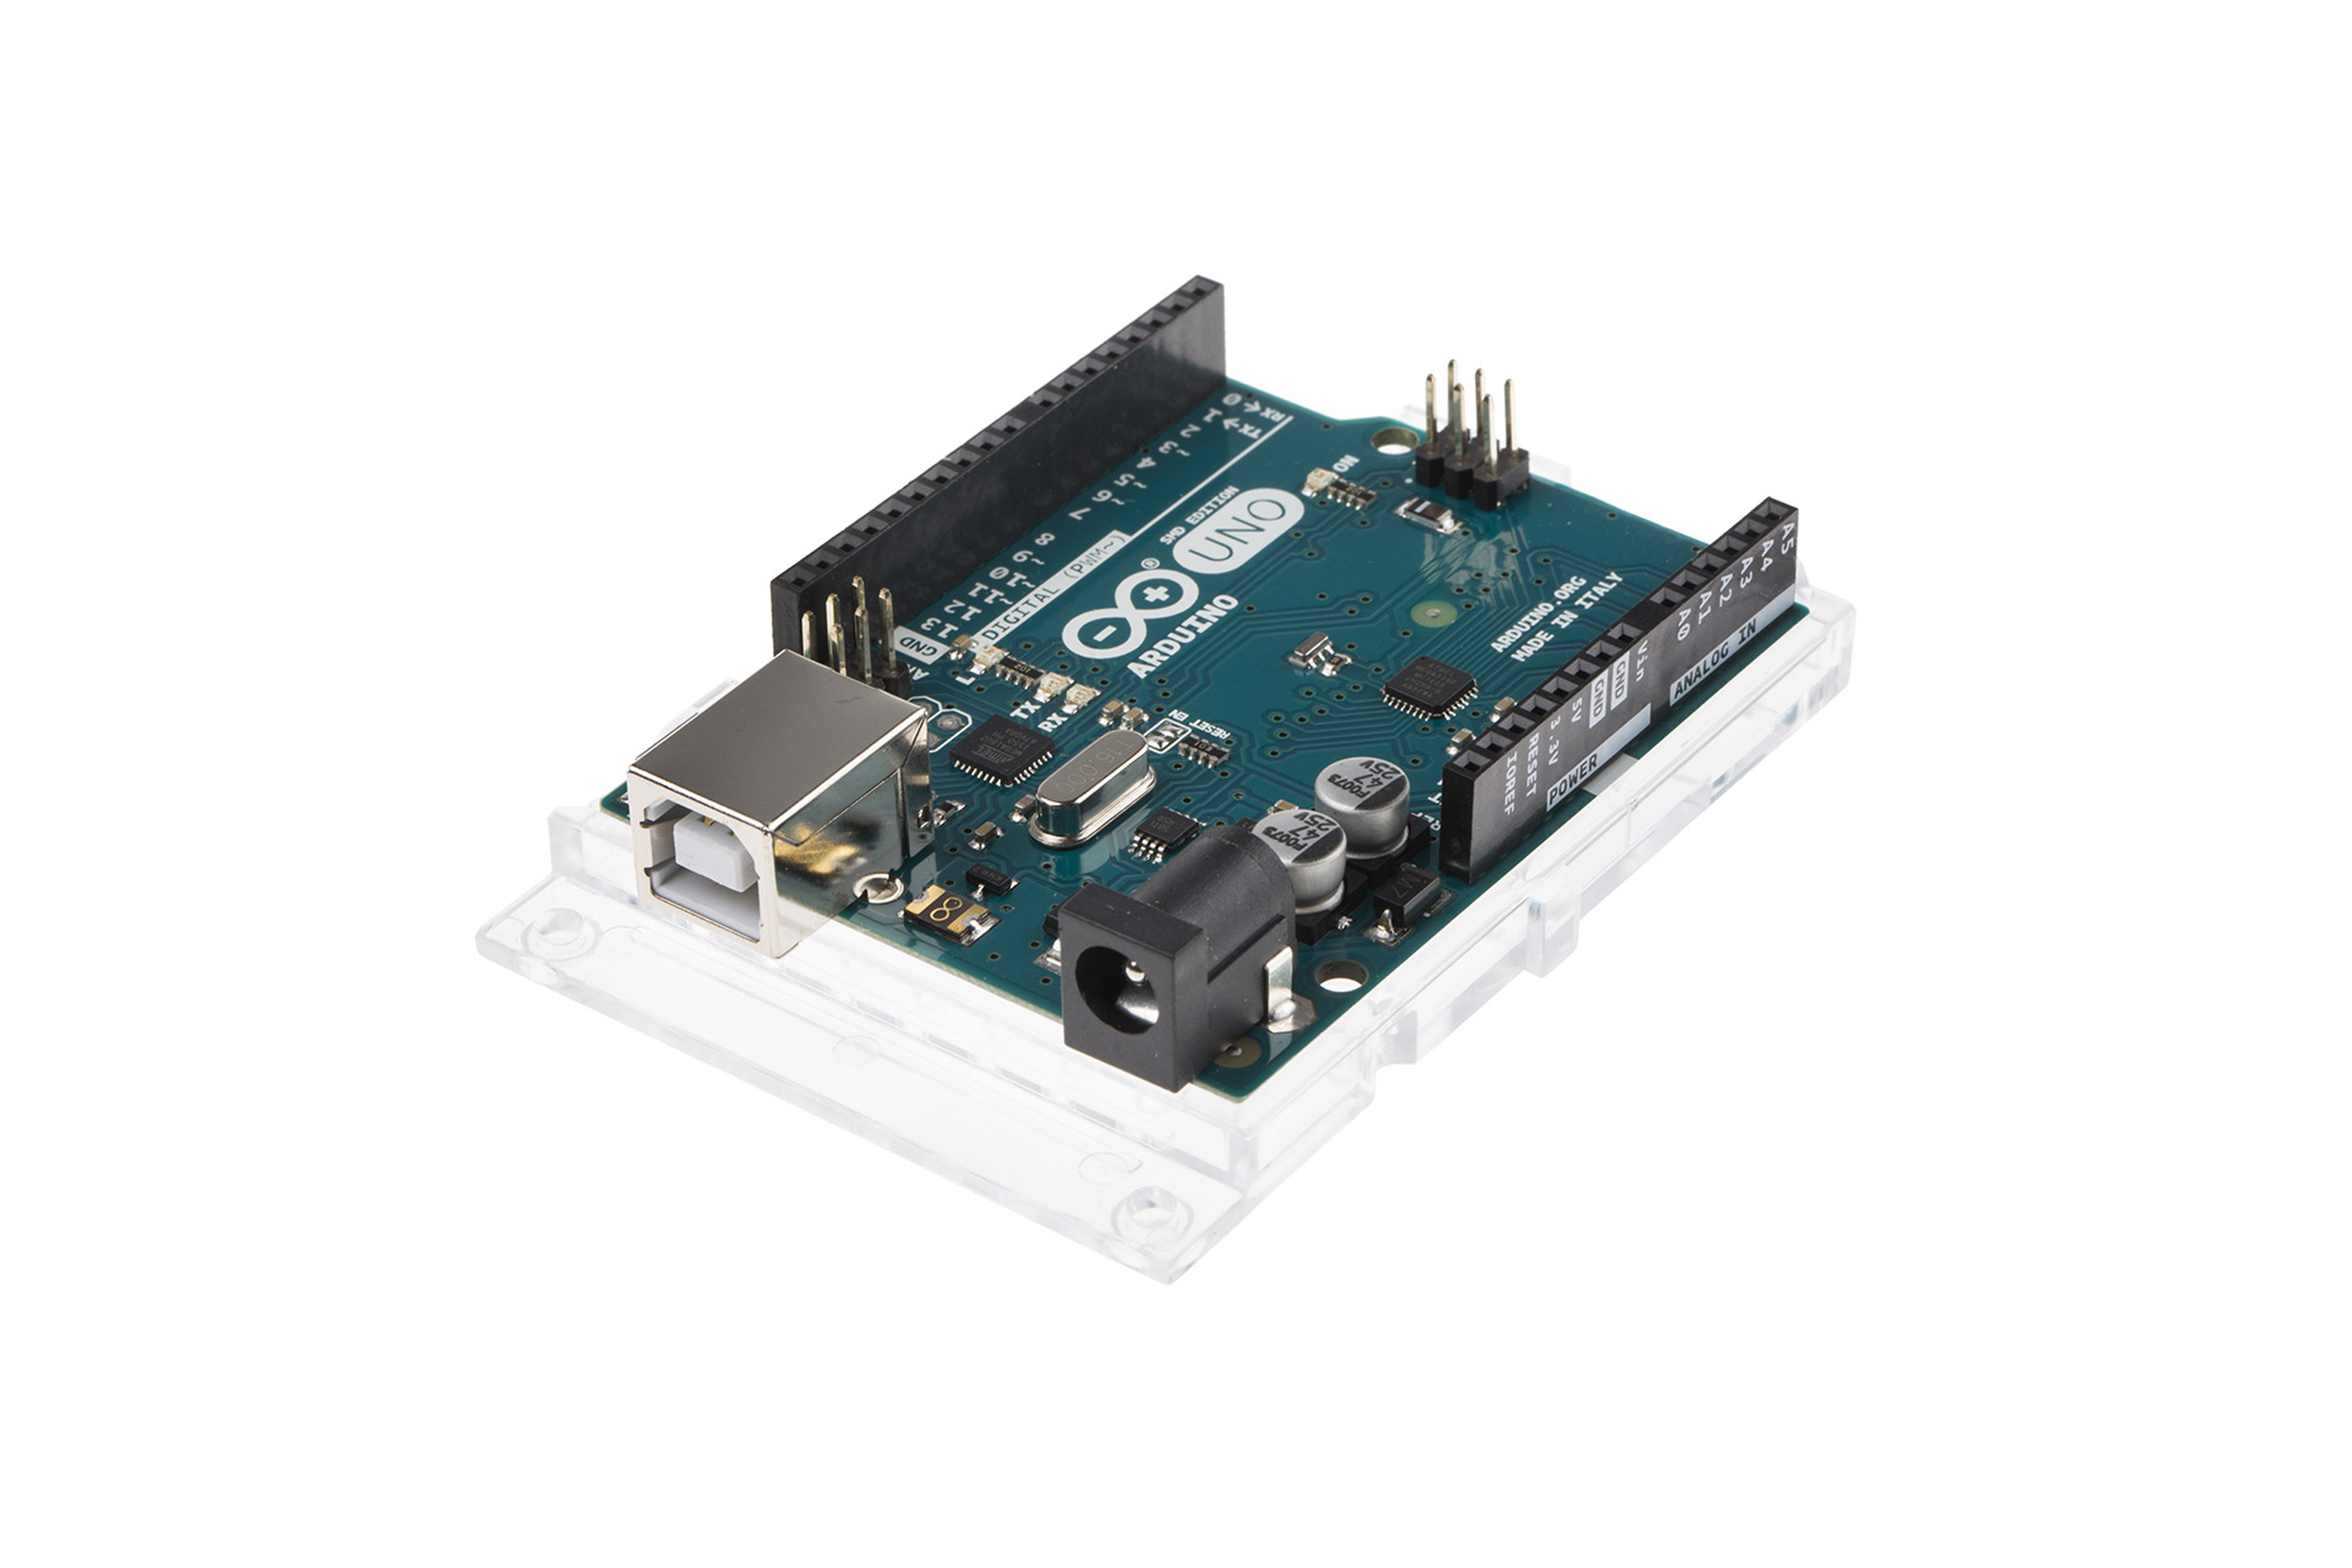 Arduino Uno R3 SMD Development Board - Arduino